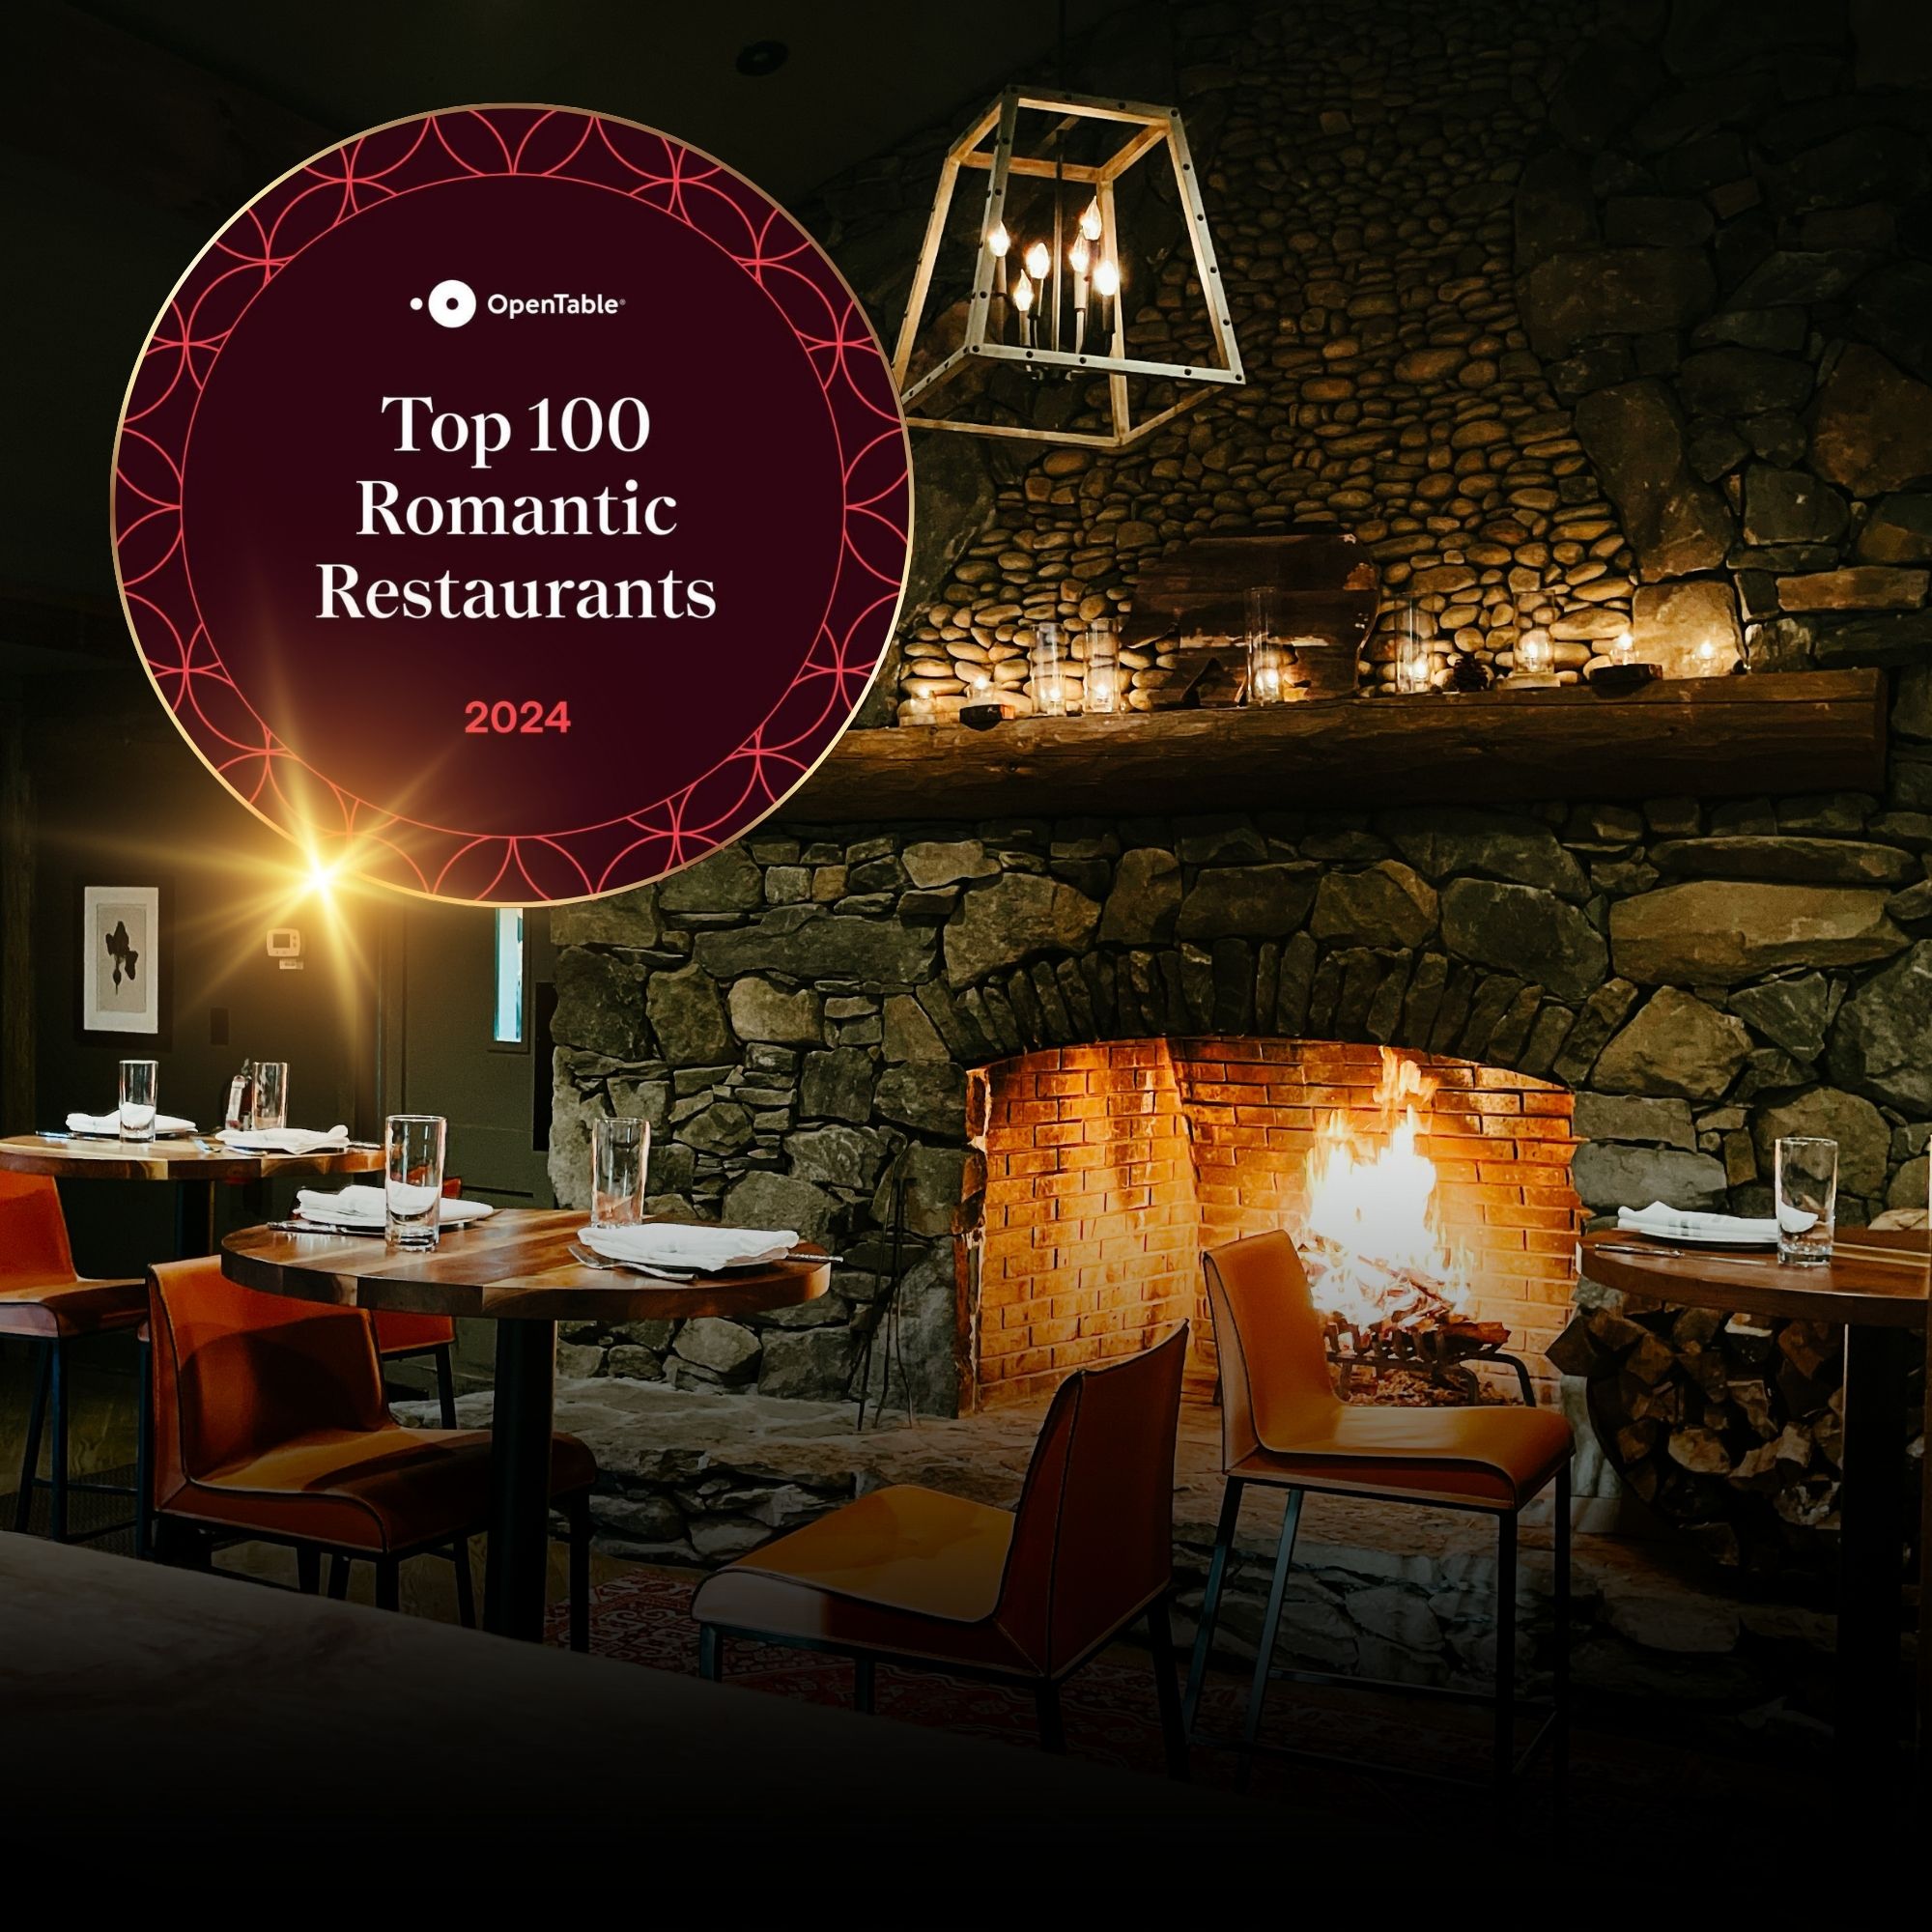 OpenTable: Top 100 Romantic Restaurants in America for 2024